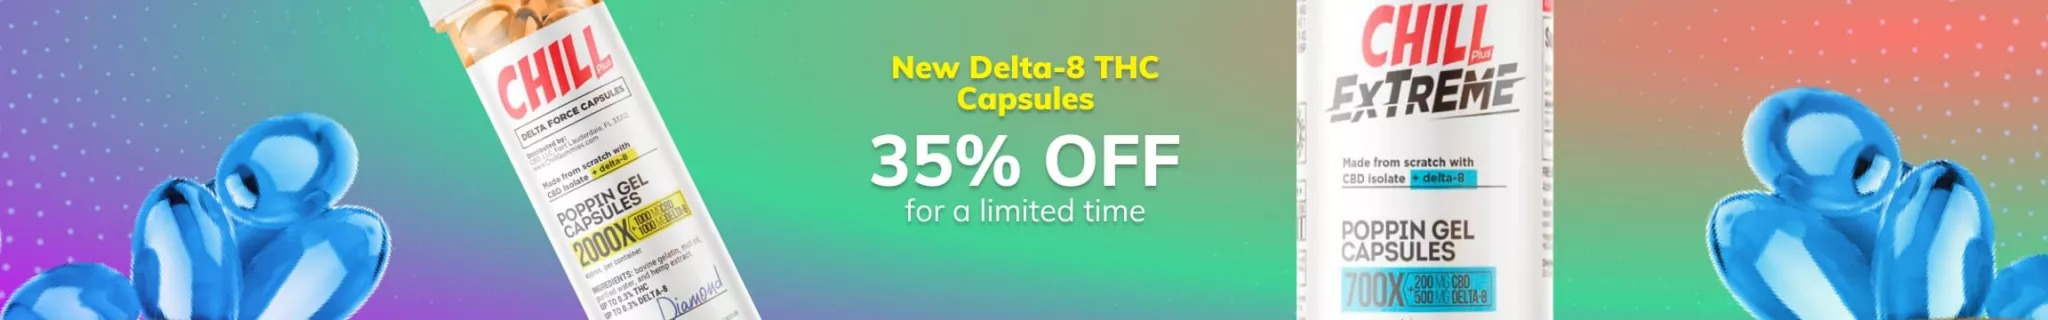 Delta-8 THC Capsules 35% OFF